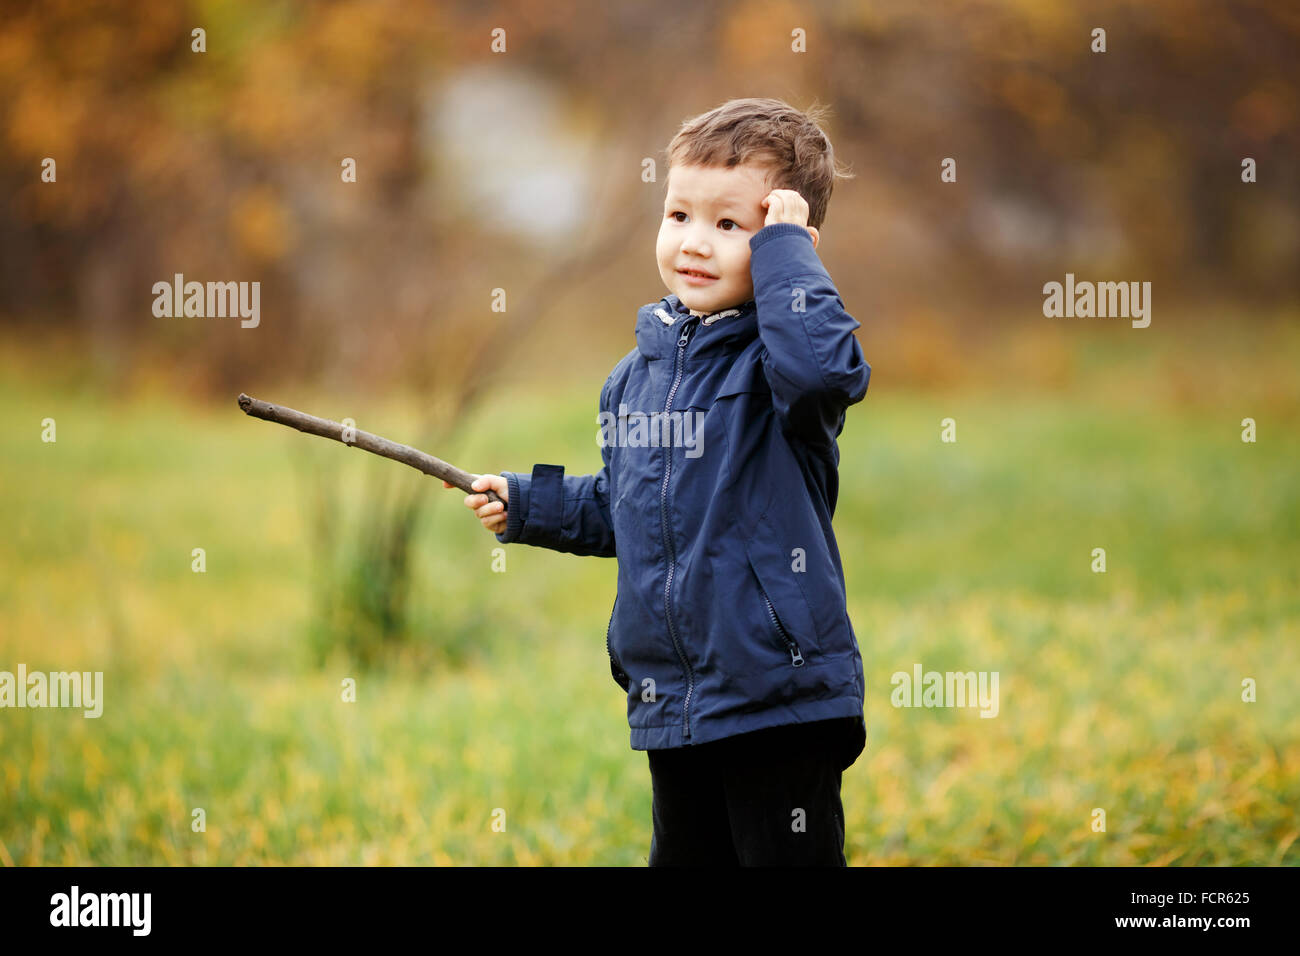 Netter Junge mit Holzstab in der Hand spielen im Herbst Park im Freien. Verwirrt, denken, was zu tun ist, auf der Suche zur Seite. Herbst, gelbe Blätter. Kinder tragen blaue Jacke. Unbeschwerte Kindheit. Stockfoto